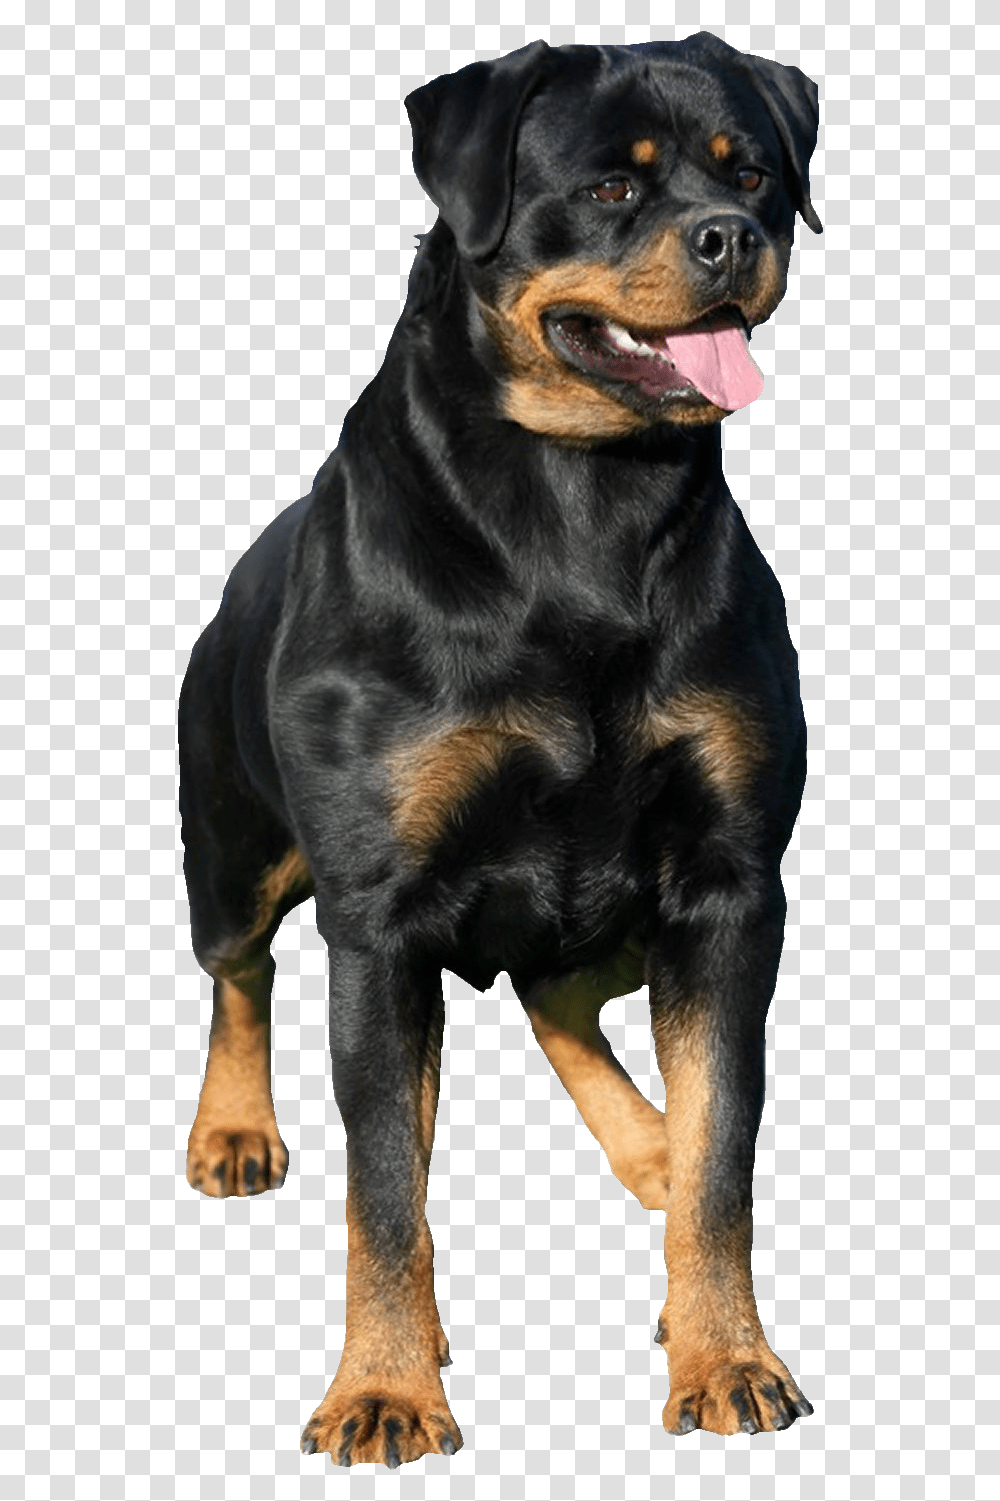 Rottweiler Images Rottweiler, Dog, Pet, Canine, Animal Transparent Png